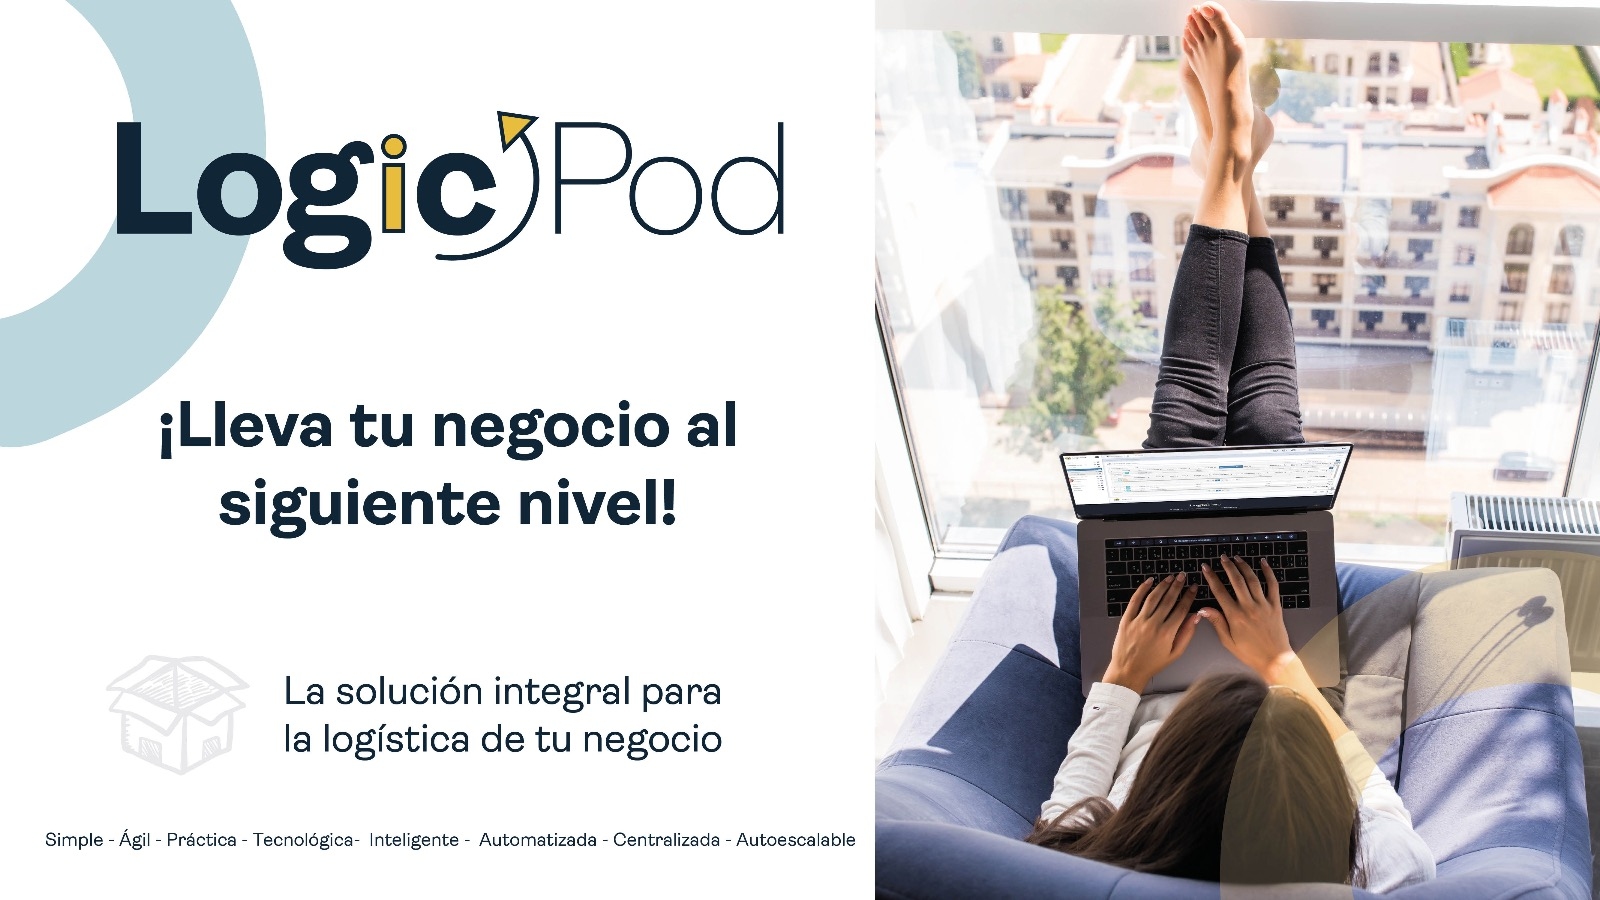 LogicPod llega a Colombia para revolucionar la gestión de los emprendedores